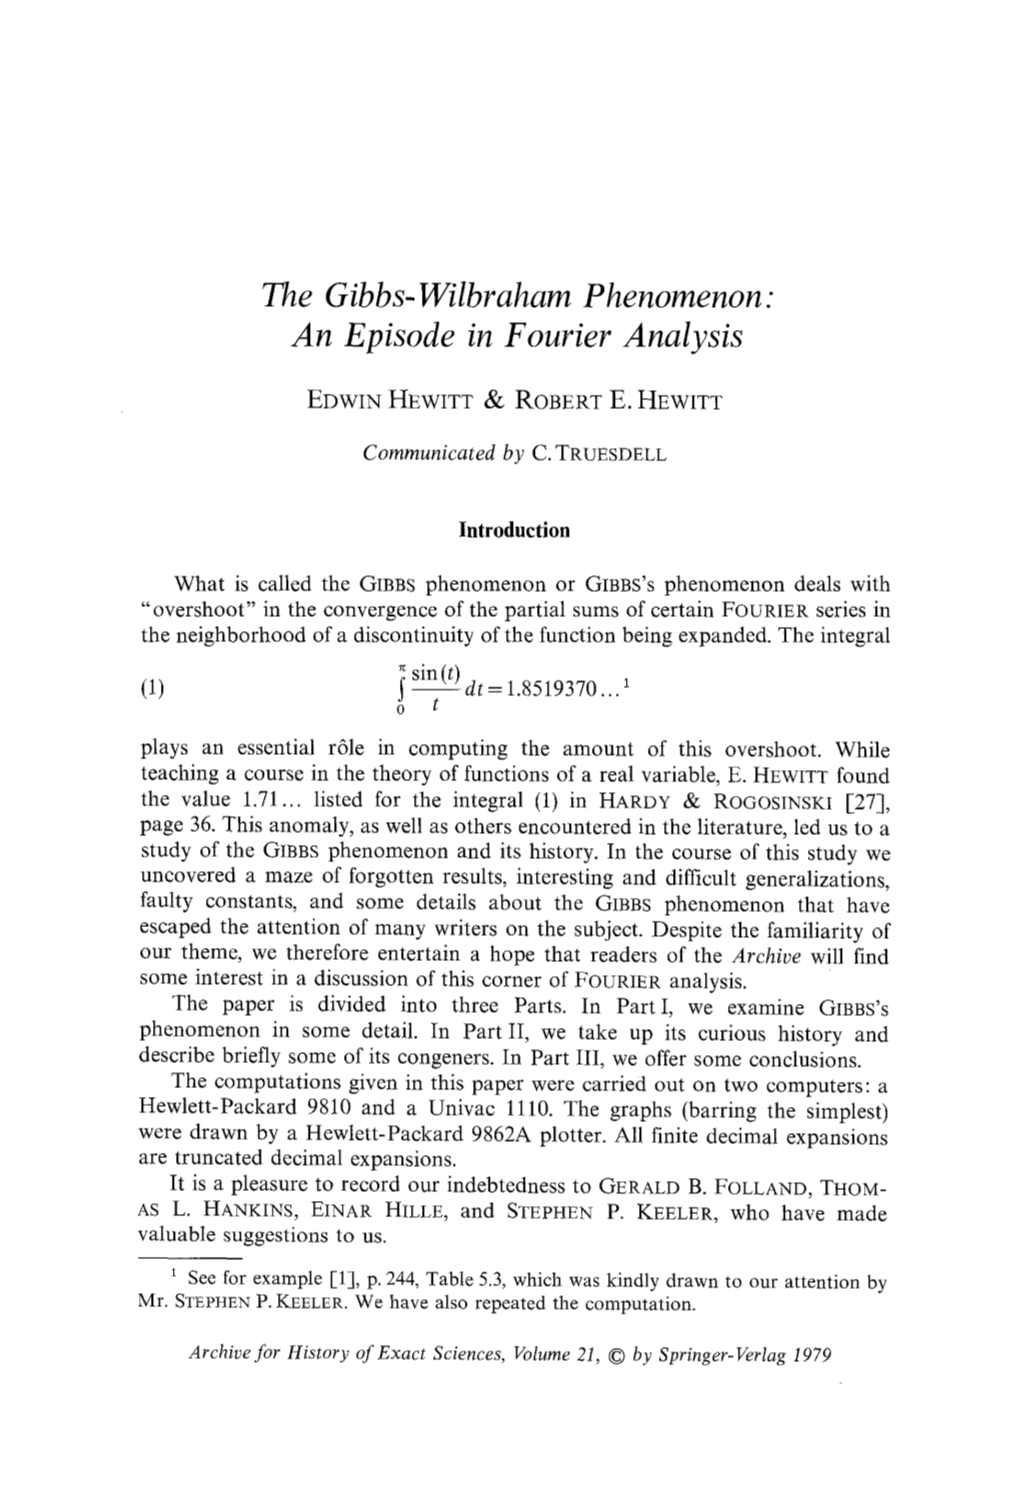 The Gibbs-Wilbraham Phenomenon: an Episode in Fourier Analysis